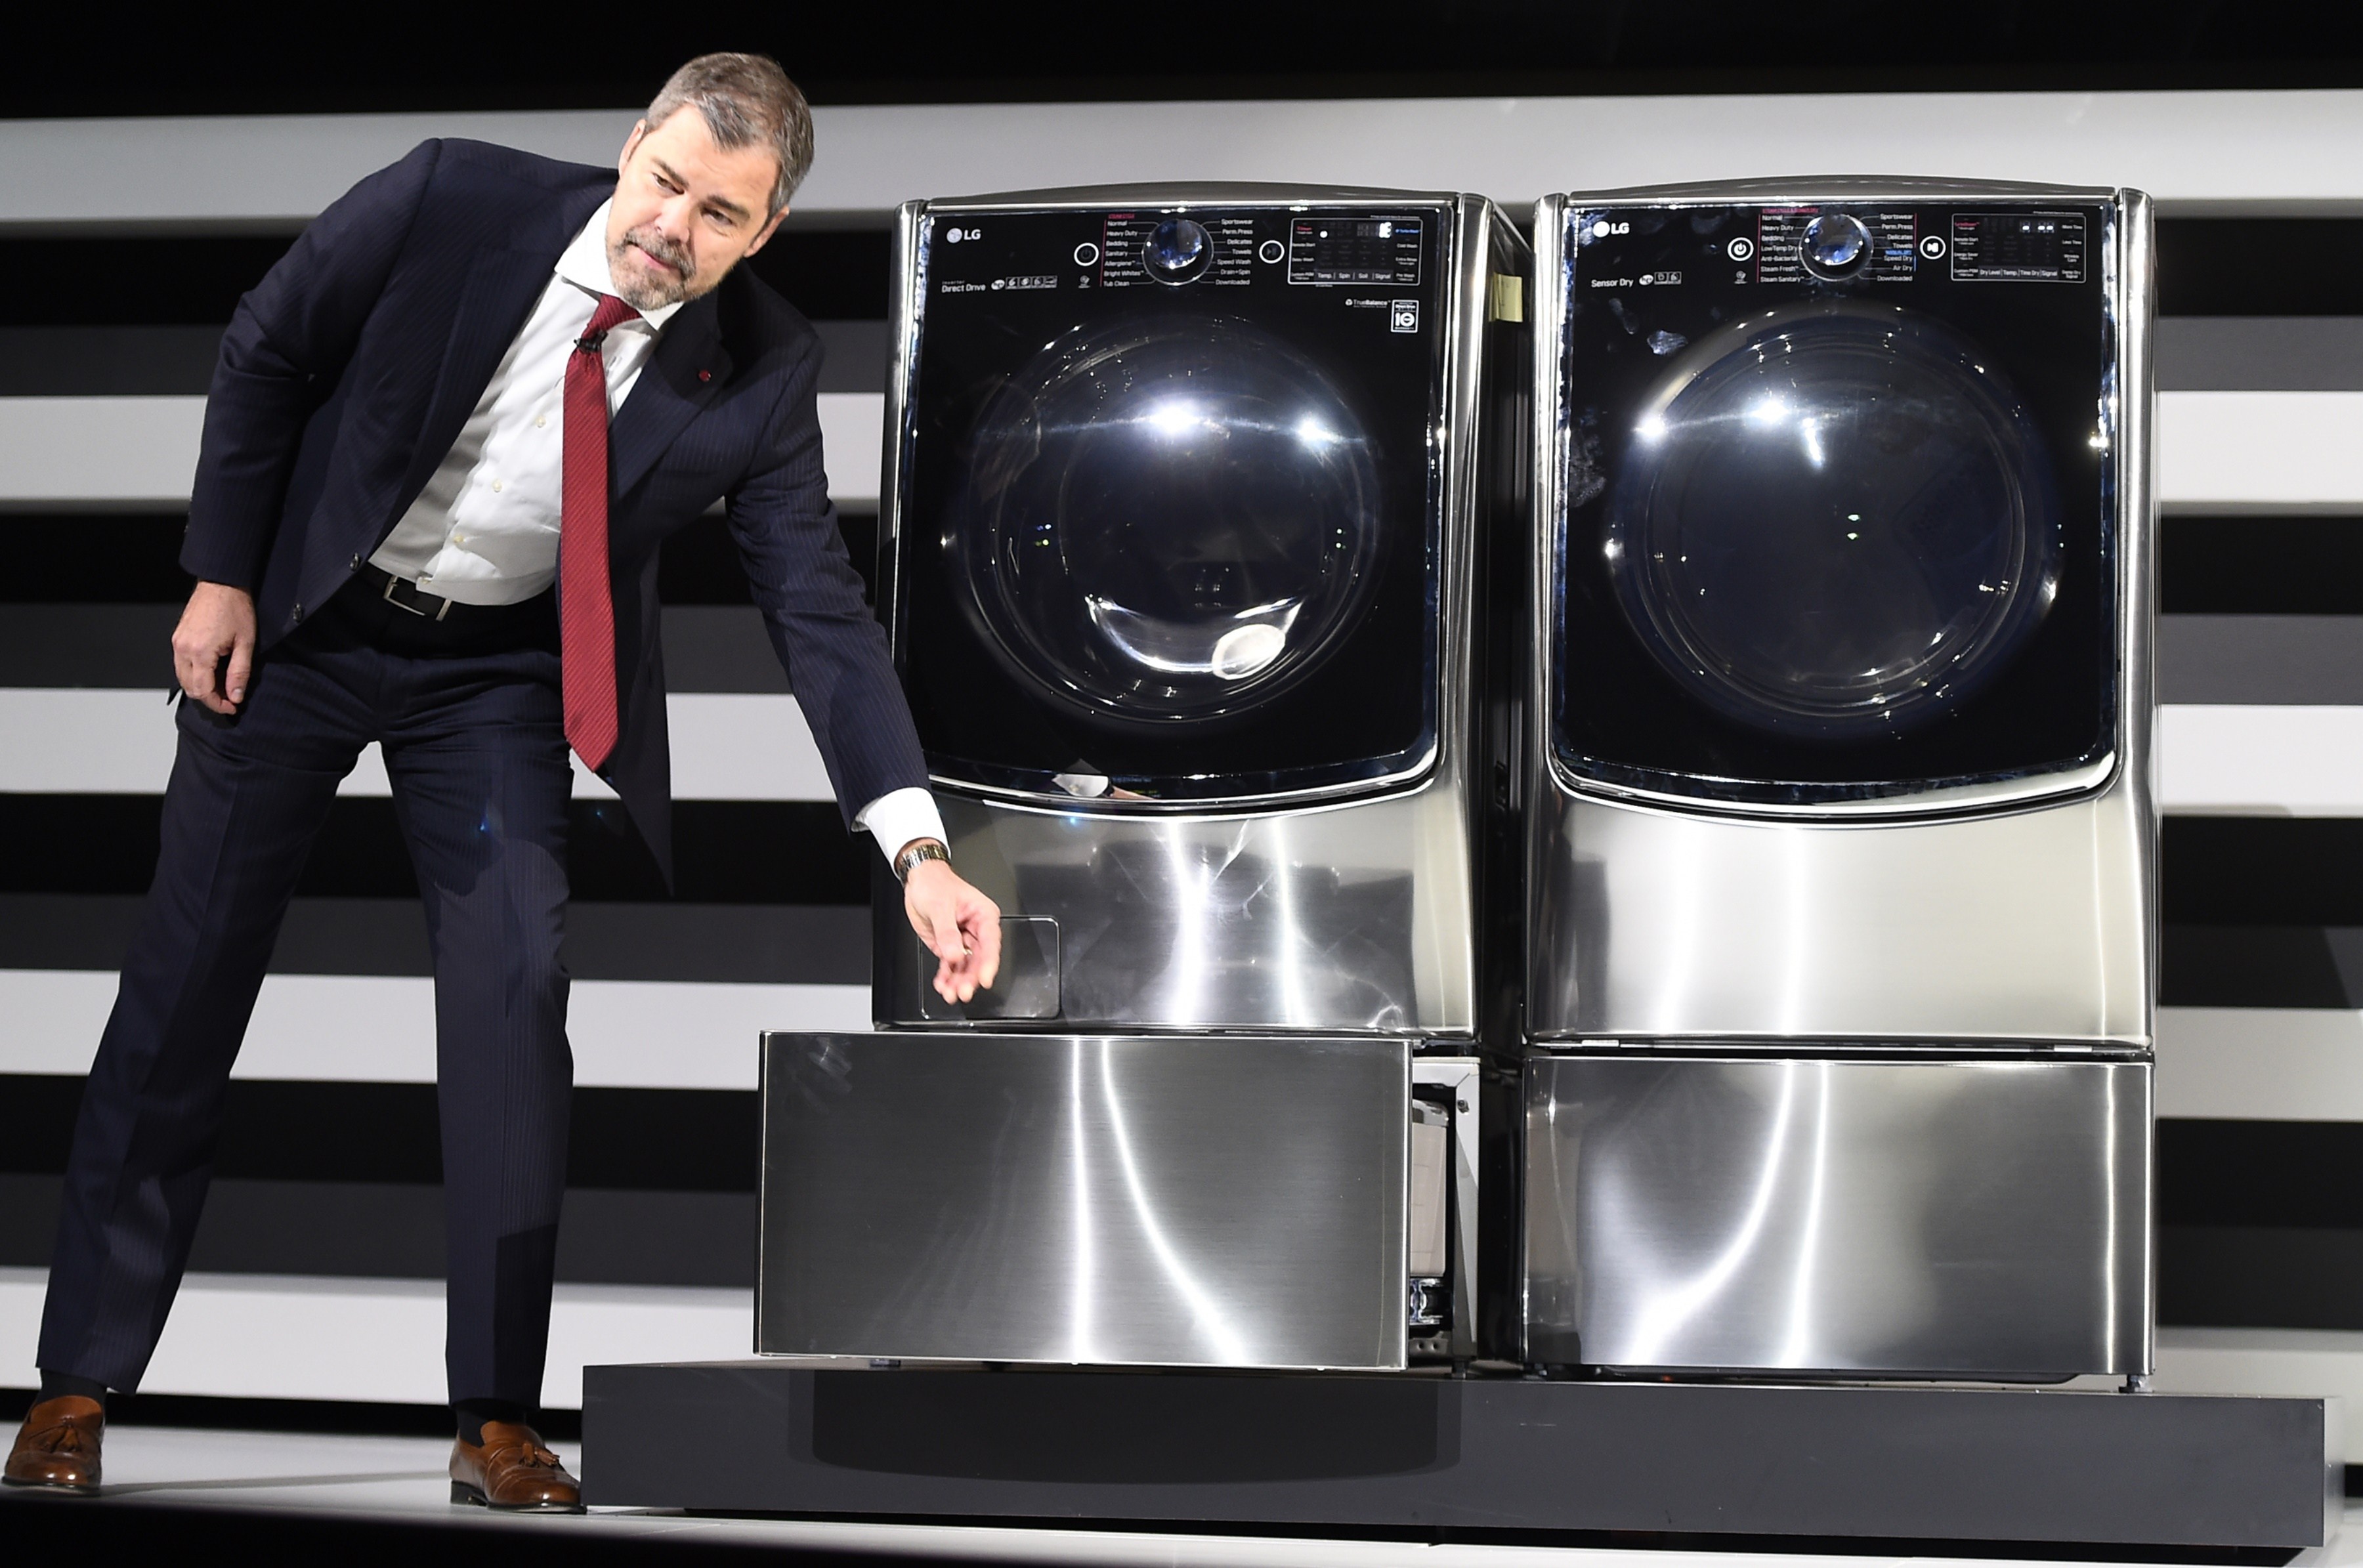 LG Washing Machine CES 2015